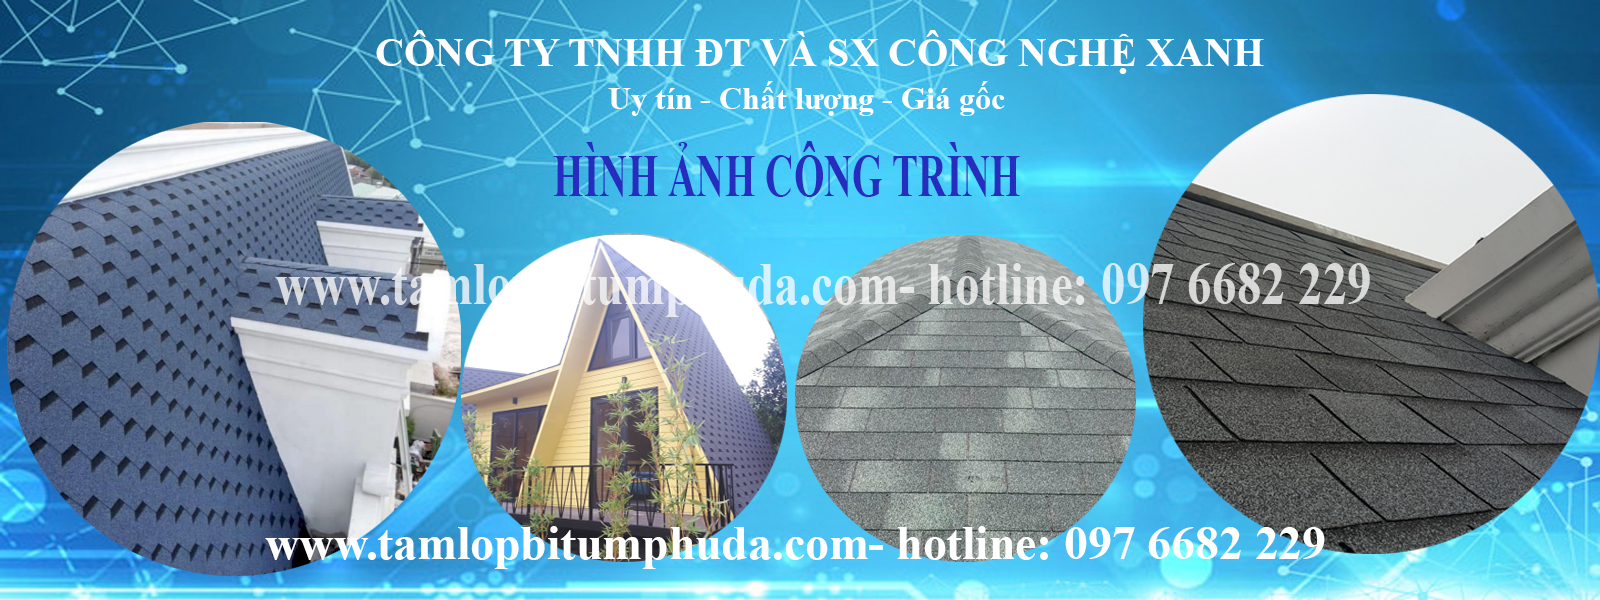 cong_trinh_thuc_te_3